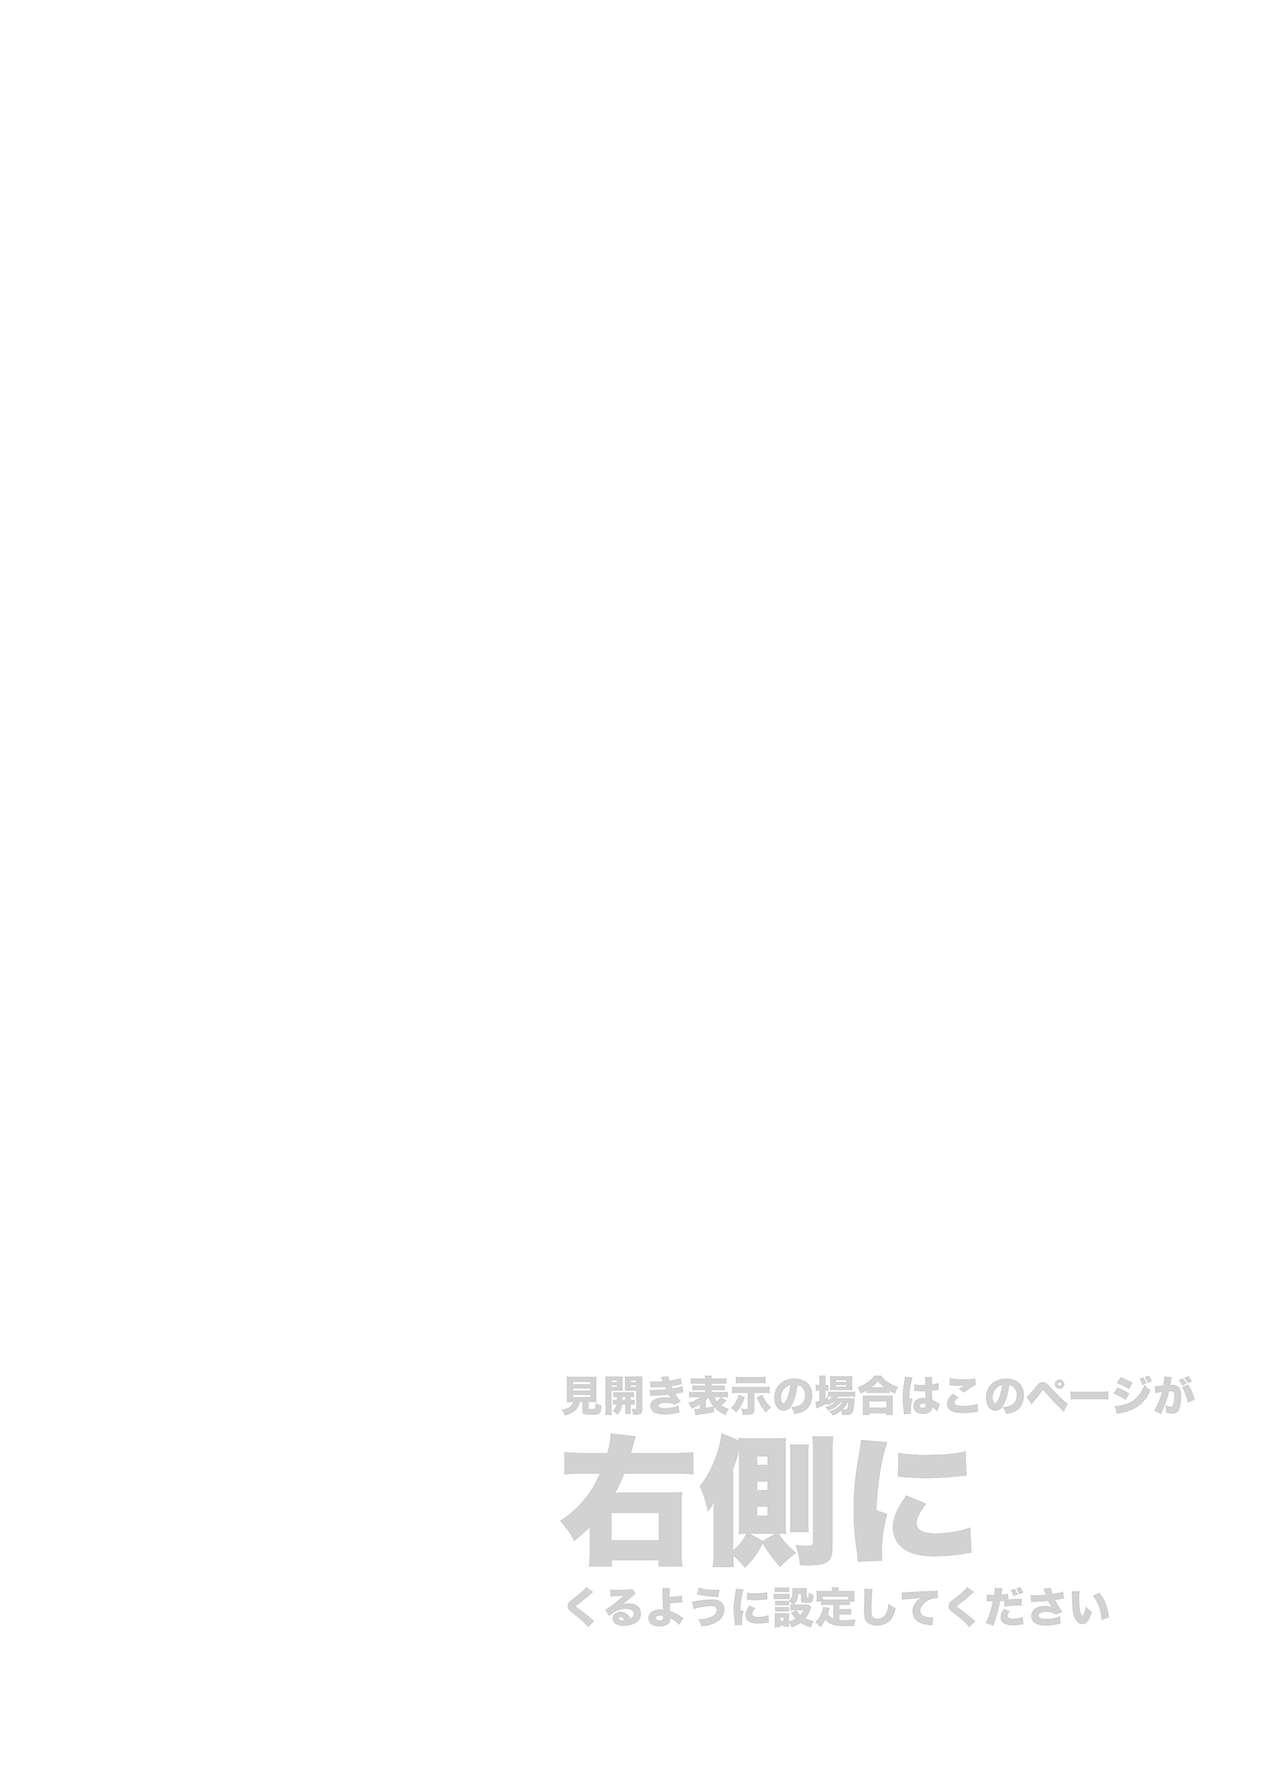 Blowjob Contest Kore wa Kintore Nanda Honto dayo Shinjite - Mobile suit gundam tekketsu no orphans Culazo - Page 2